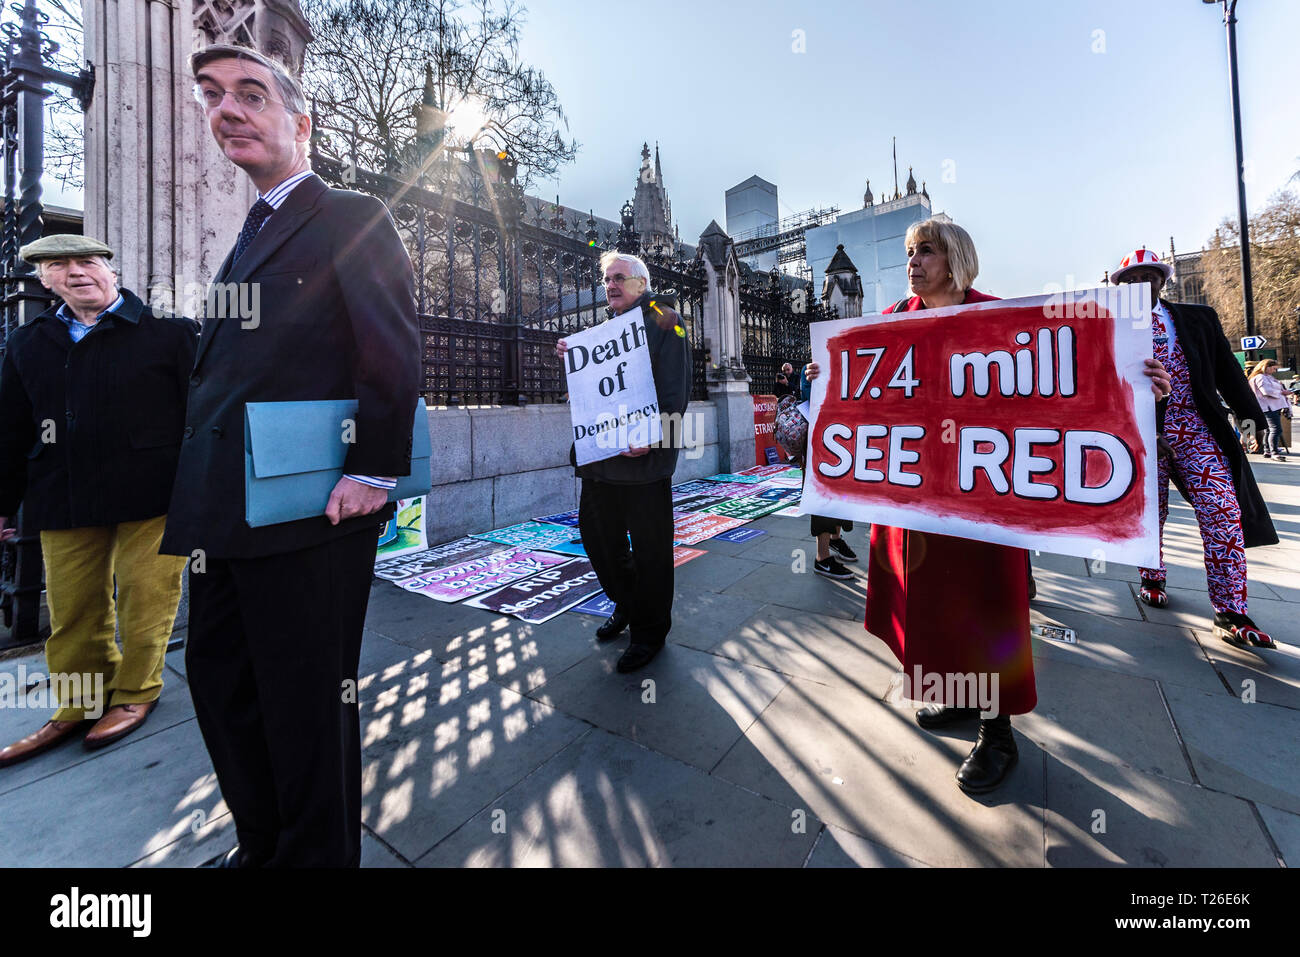 Le député conservateur Jacob Rees-Mogg arrivant au Palais de Westminster, Londres, Royaume-Uni. 29 mars 2019, la date qui aurait dû être Brexit. Manifestant Banque D'Images